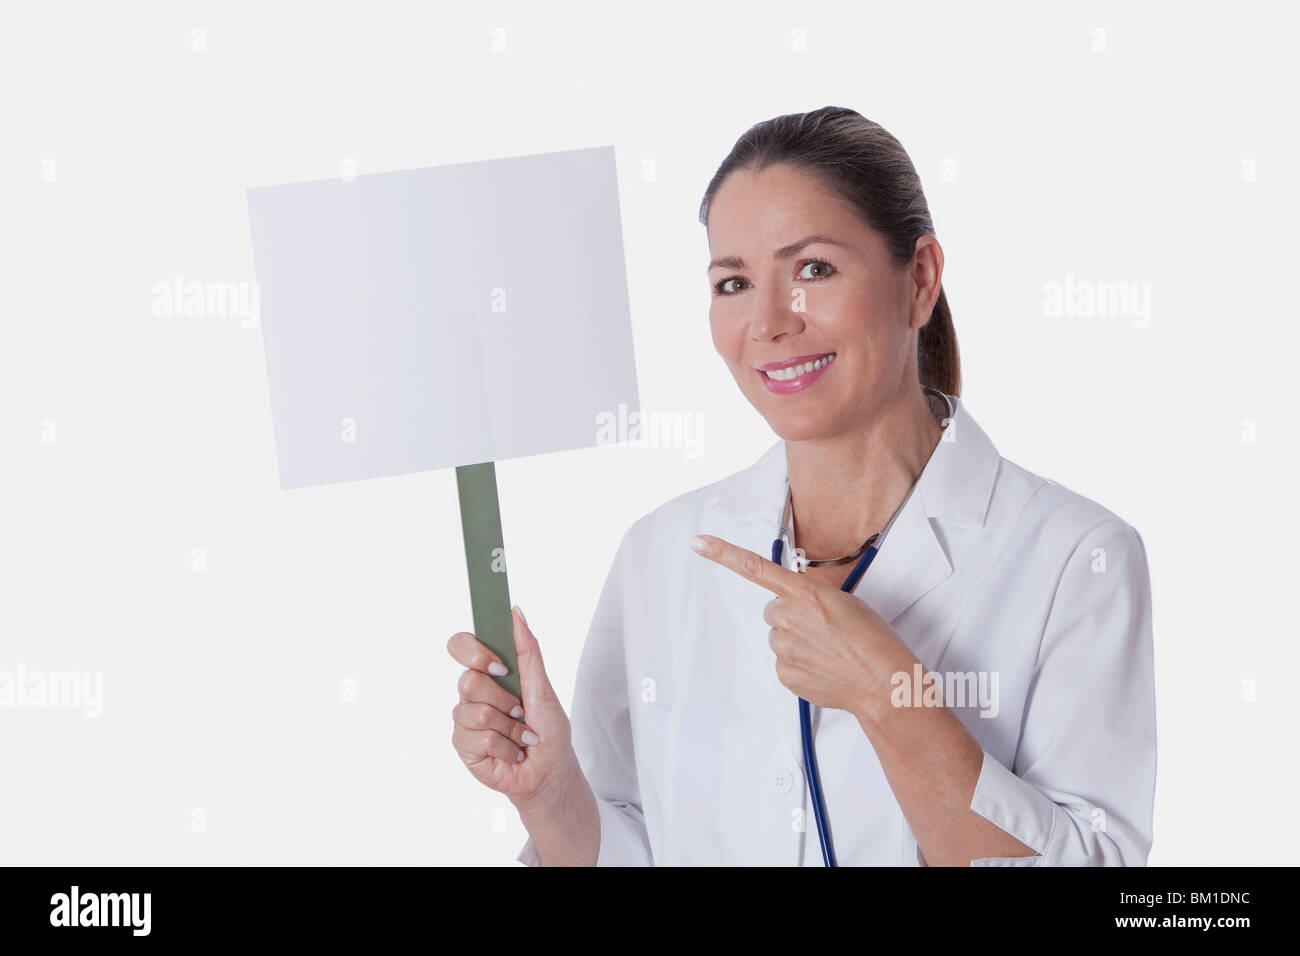 Doctora sosteniendo un cartel en blanco Foto de stock